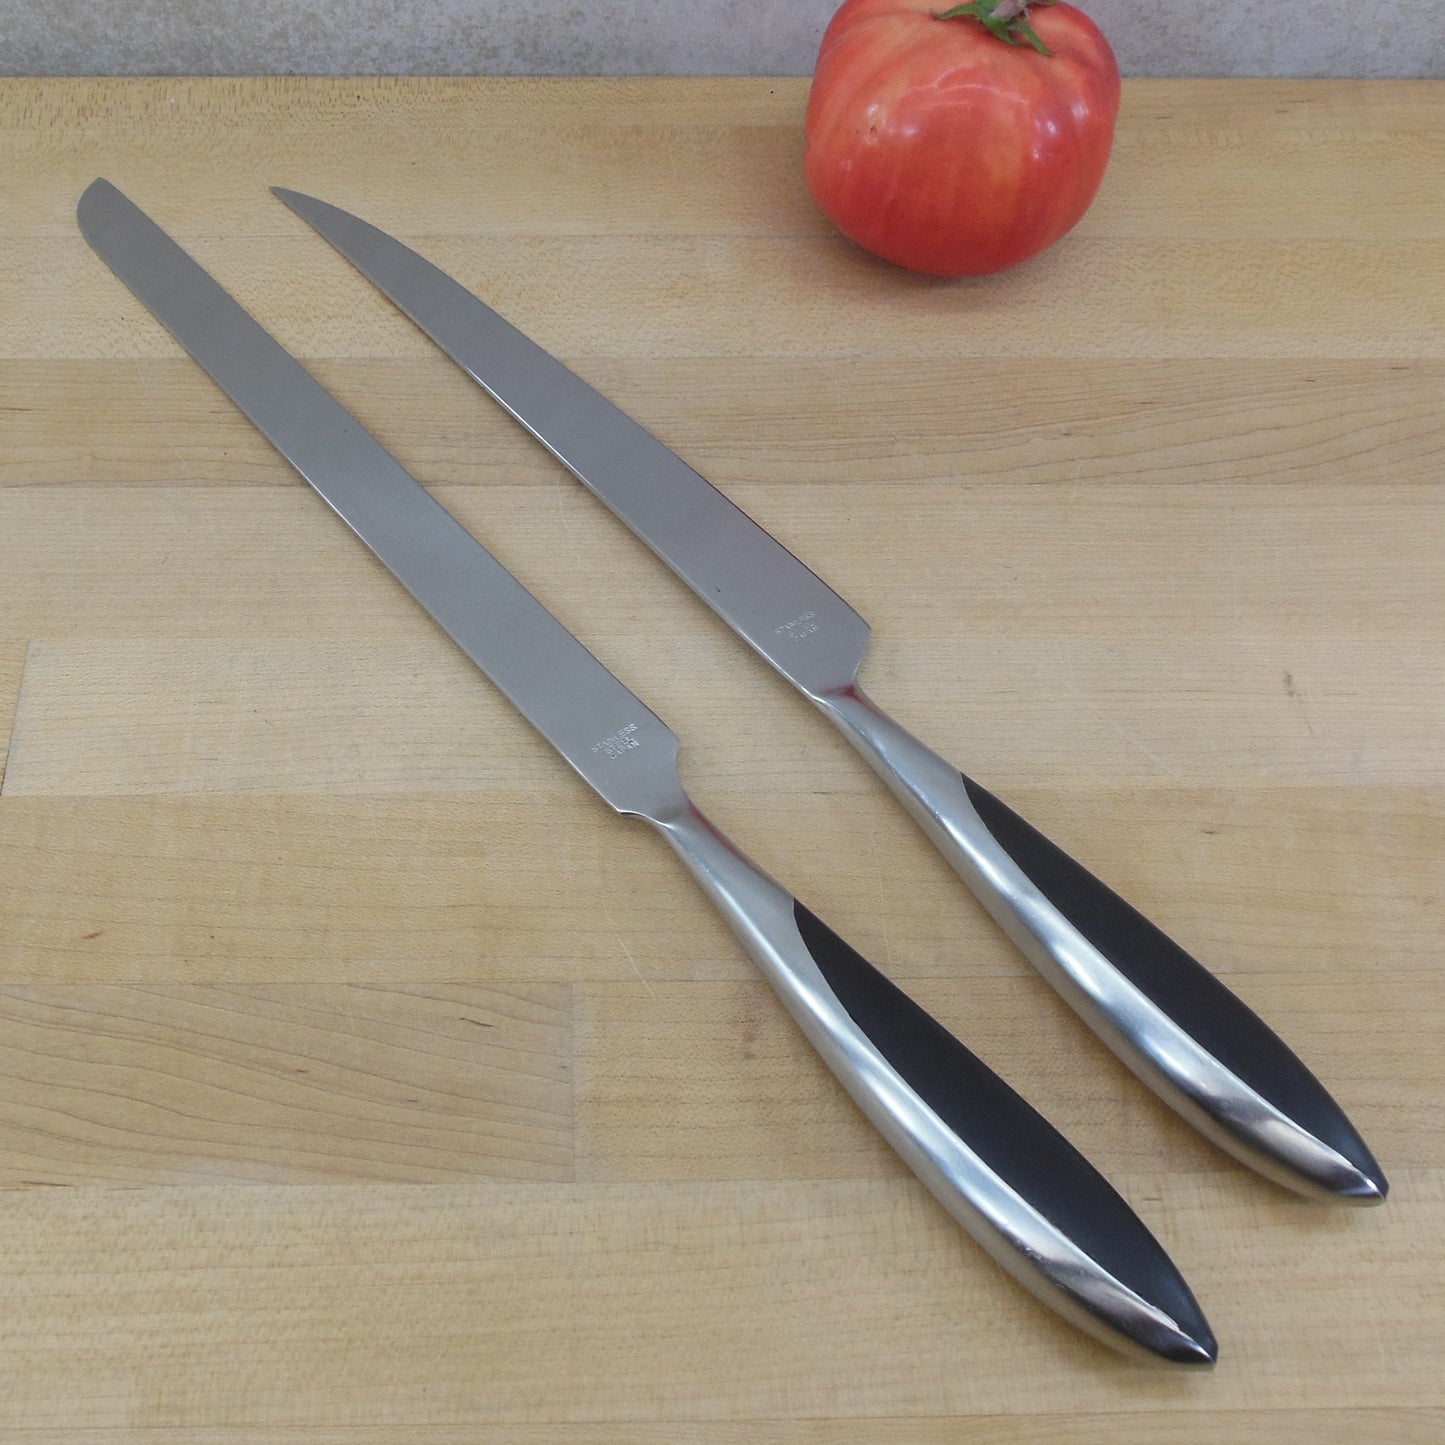 Unbranded Japan Stainless Black Composite Carving Slicing Knives vintage